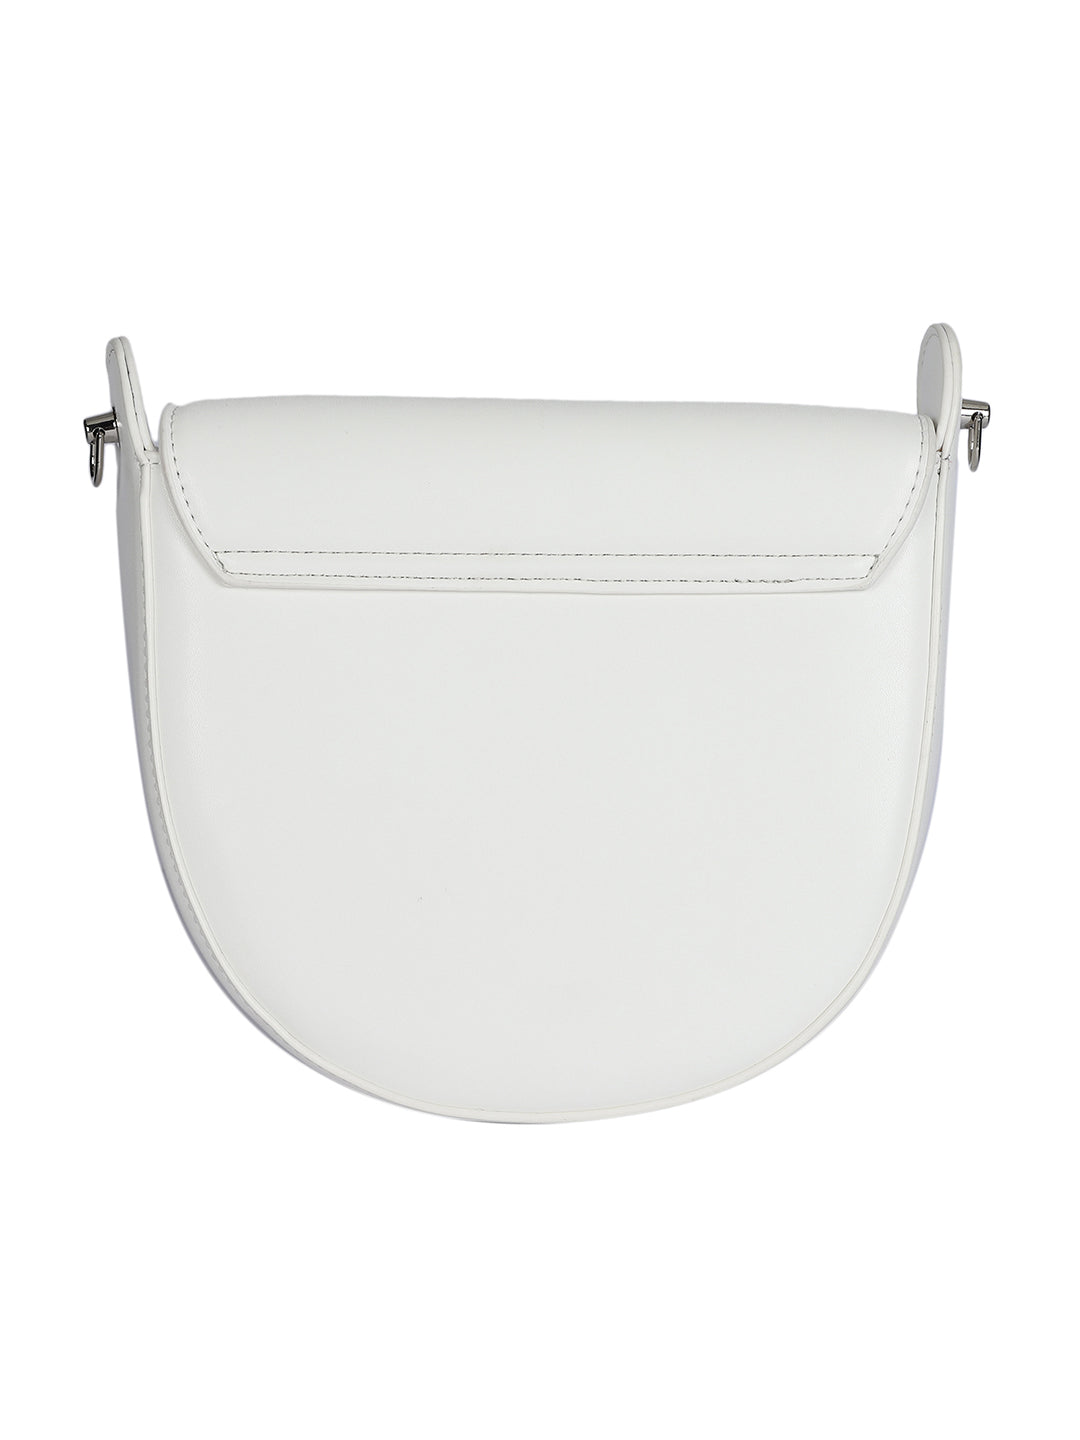 MINI WESST Women's White Handheld Bag